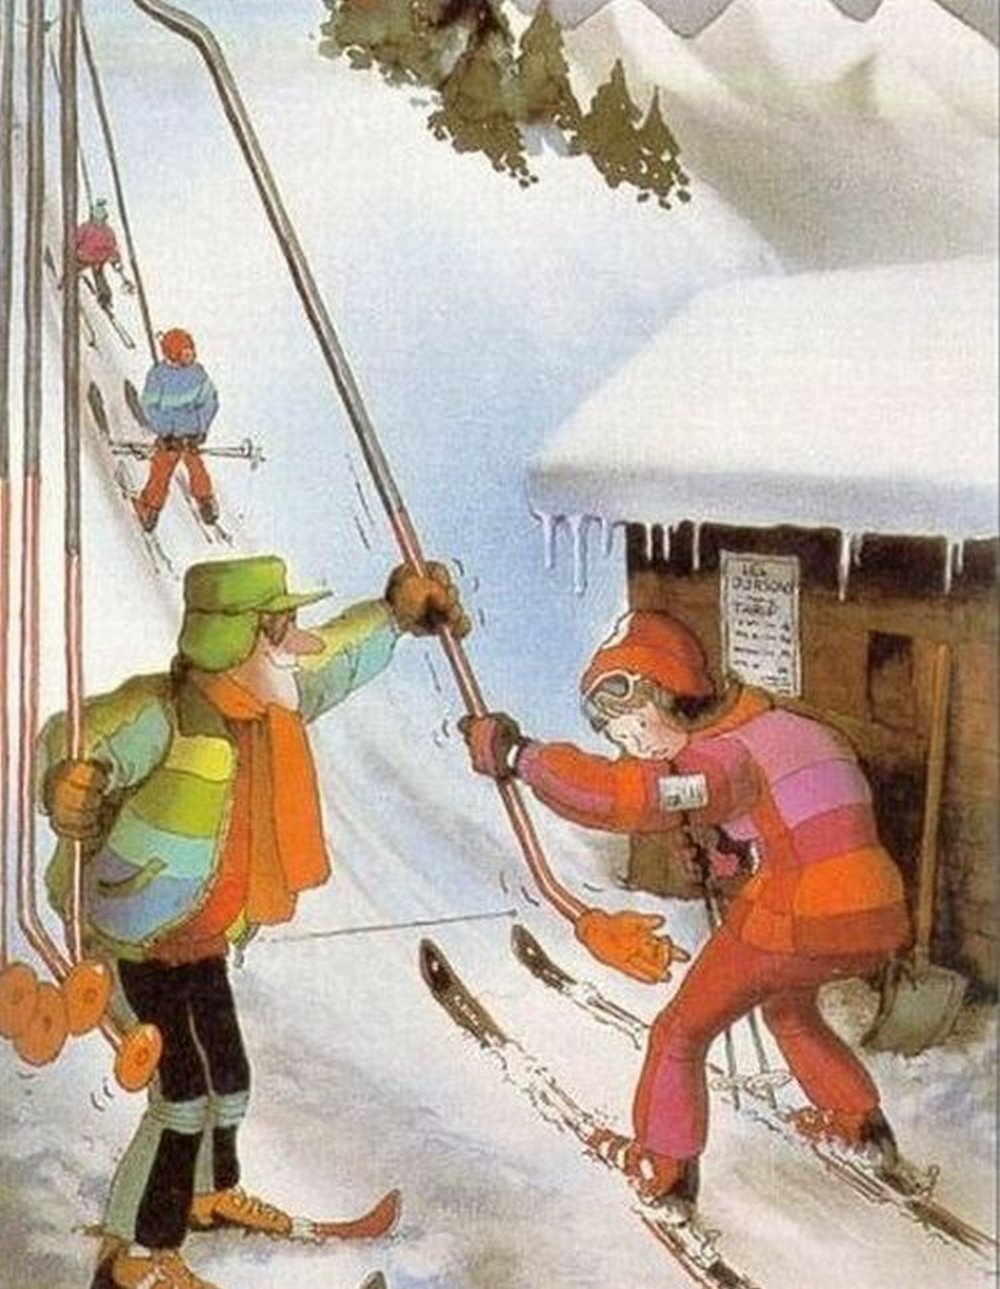 Веселый лыжник